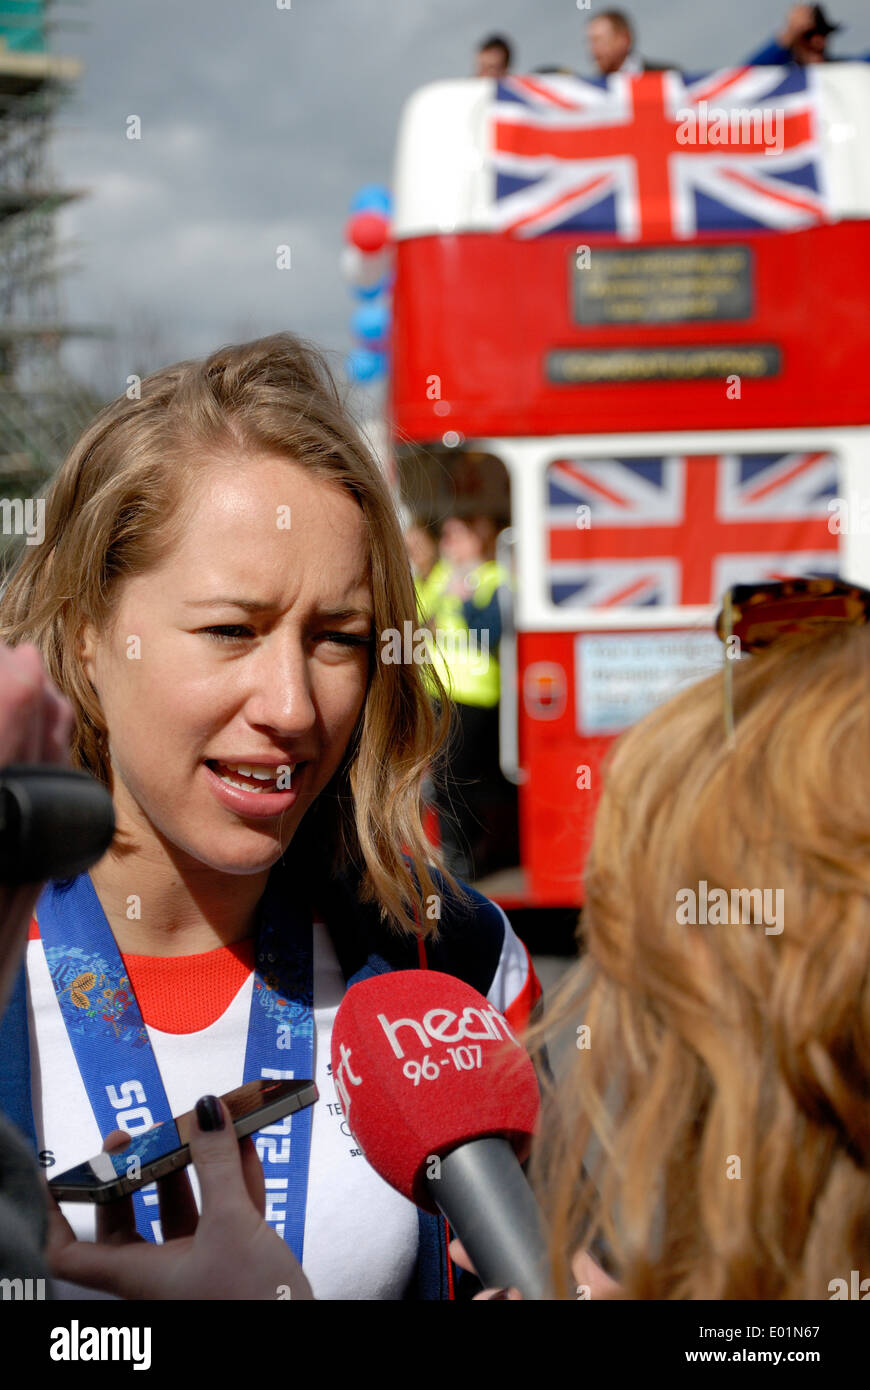 Lizzy Yarnold entrevistada por su victoria parade en Sevenoaks tras su medalla de oro olímpica en los Juegos Olímpicos de Invierno Foto de stock